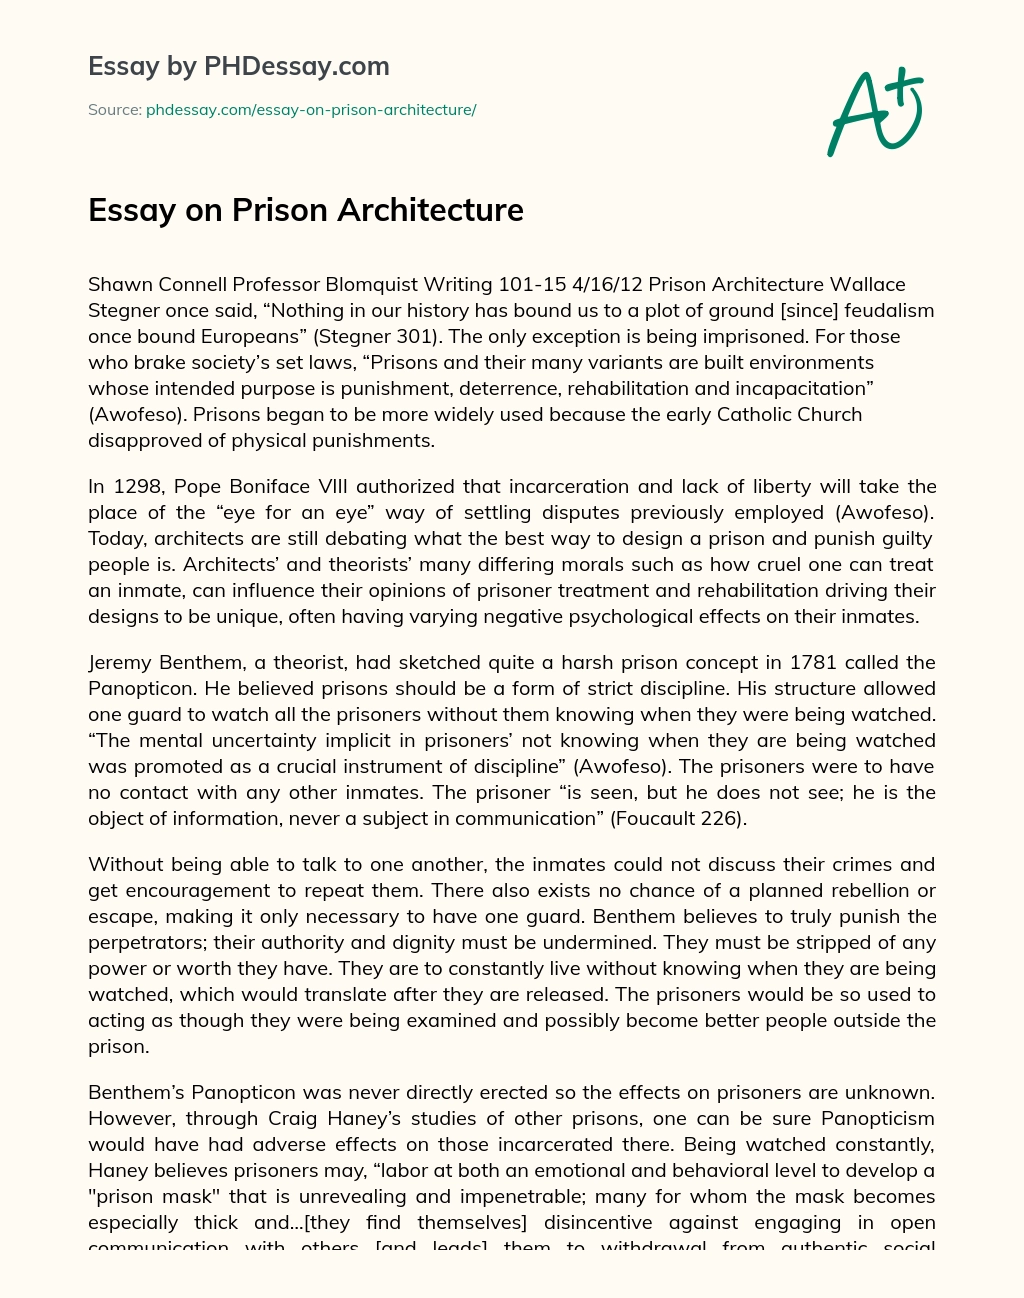 Essay on Prison Architecture essay